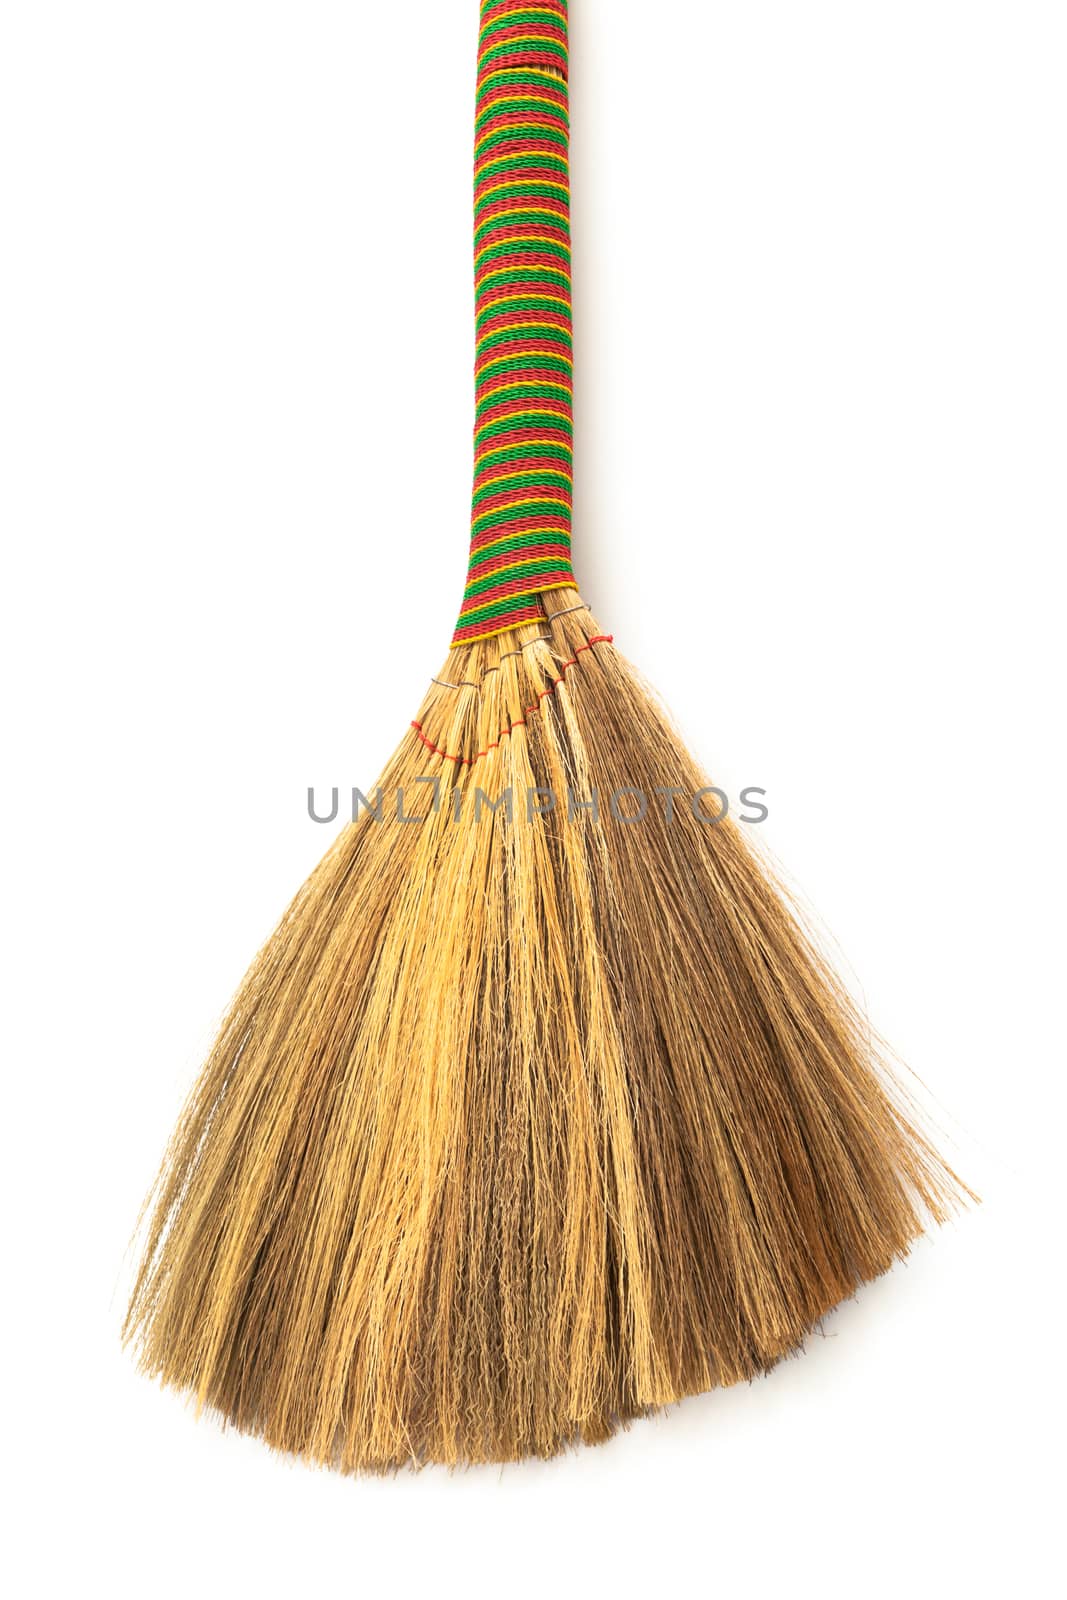 broom by terex